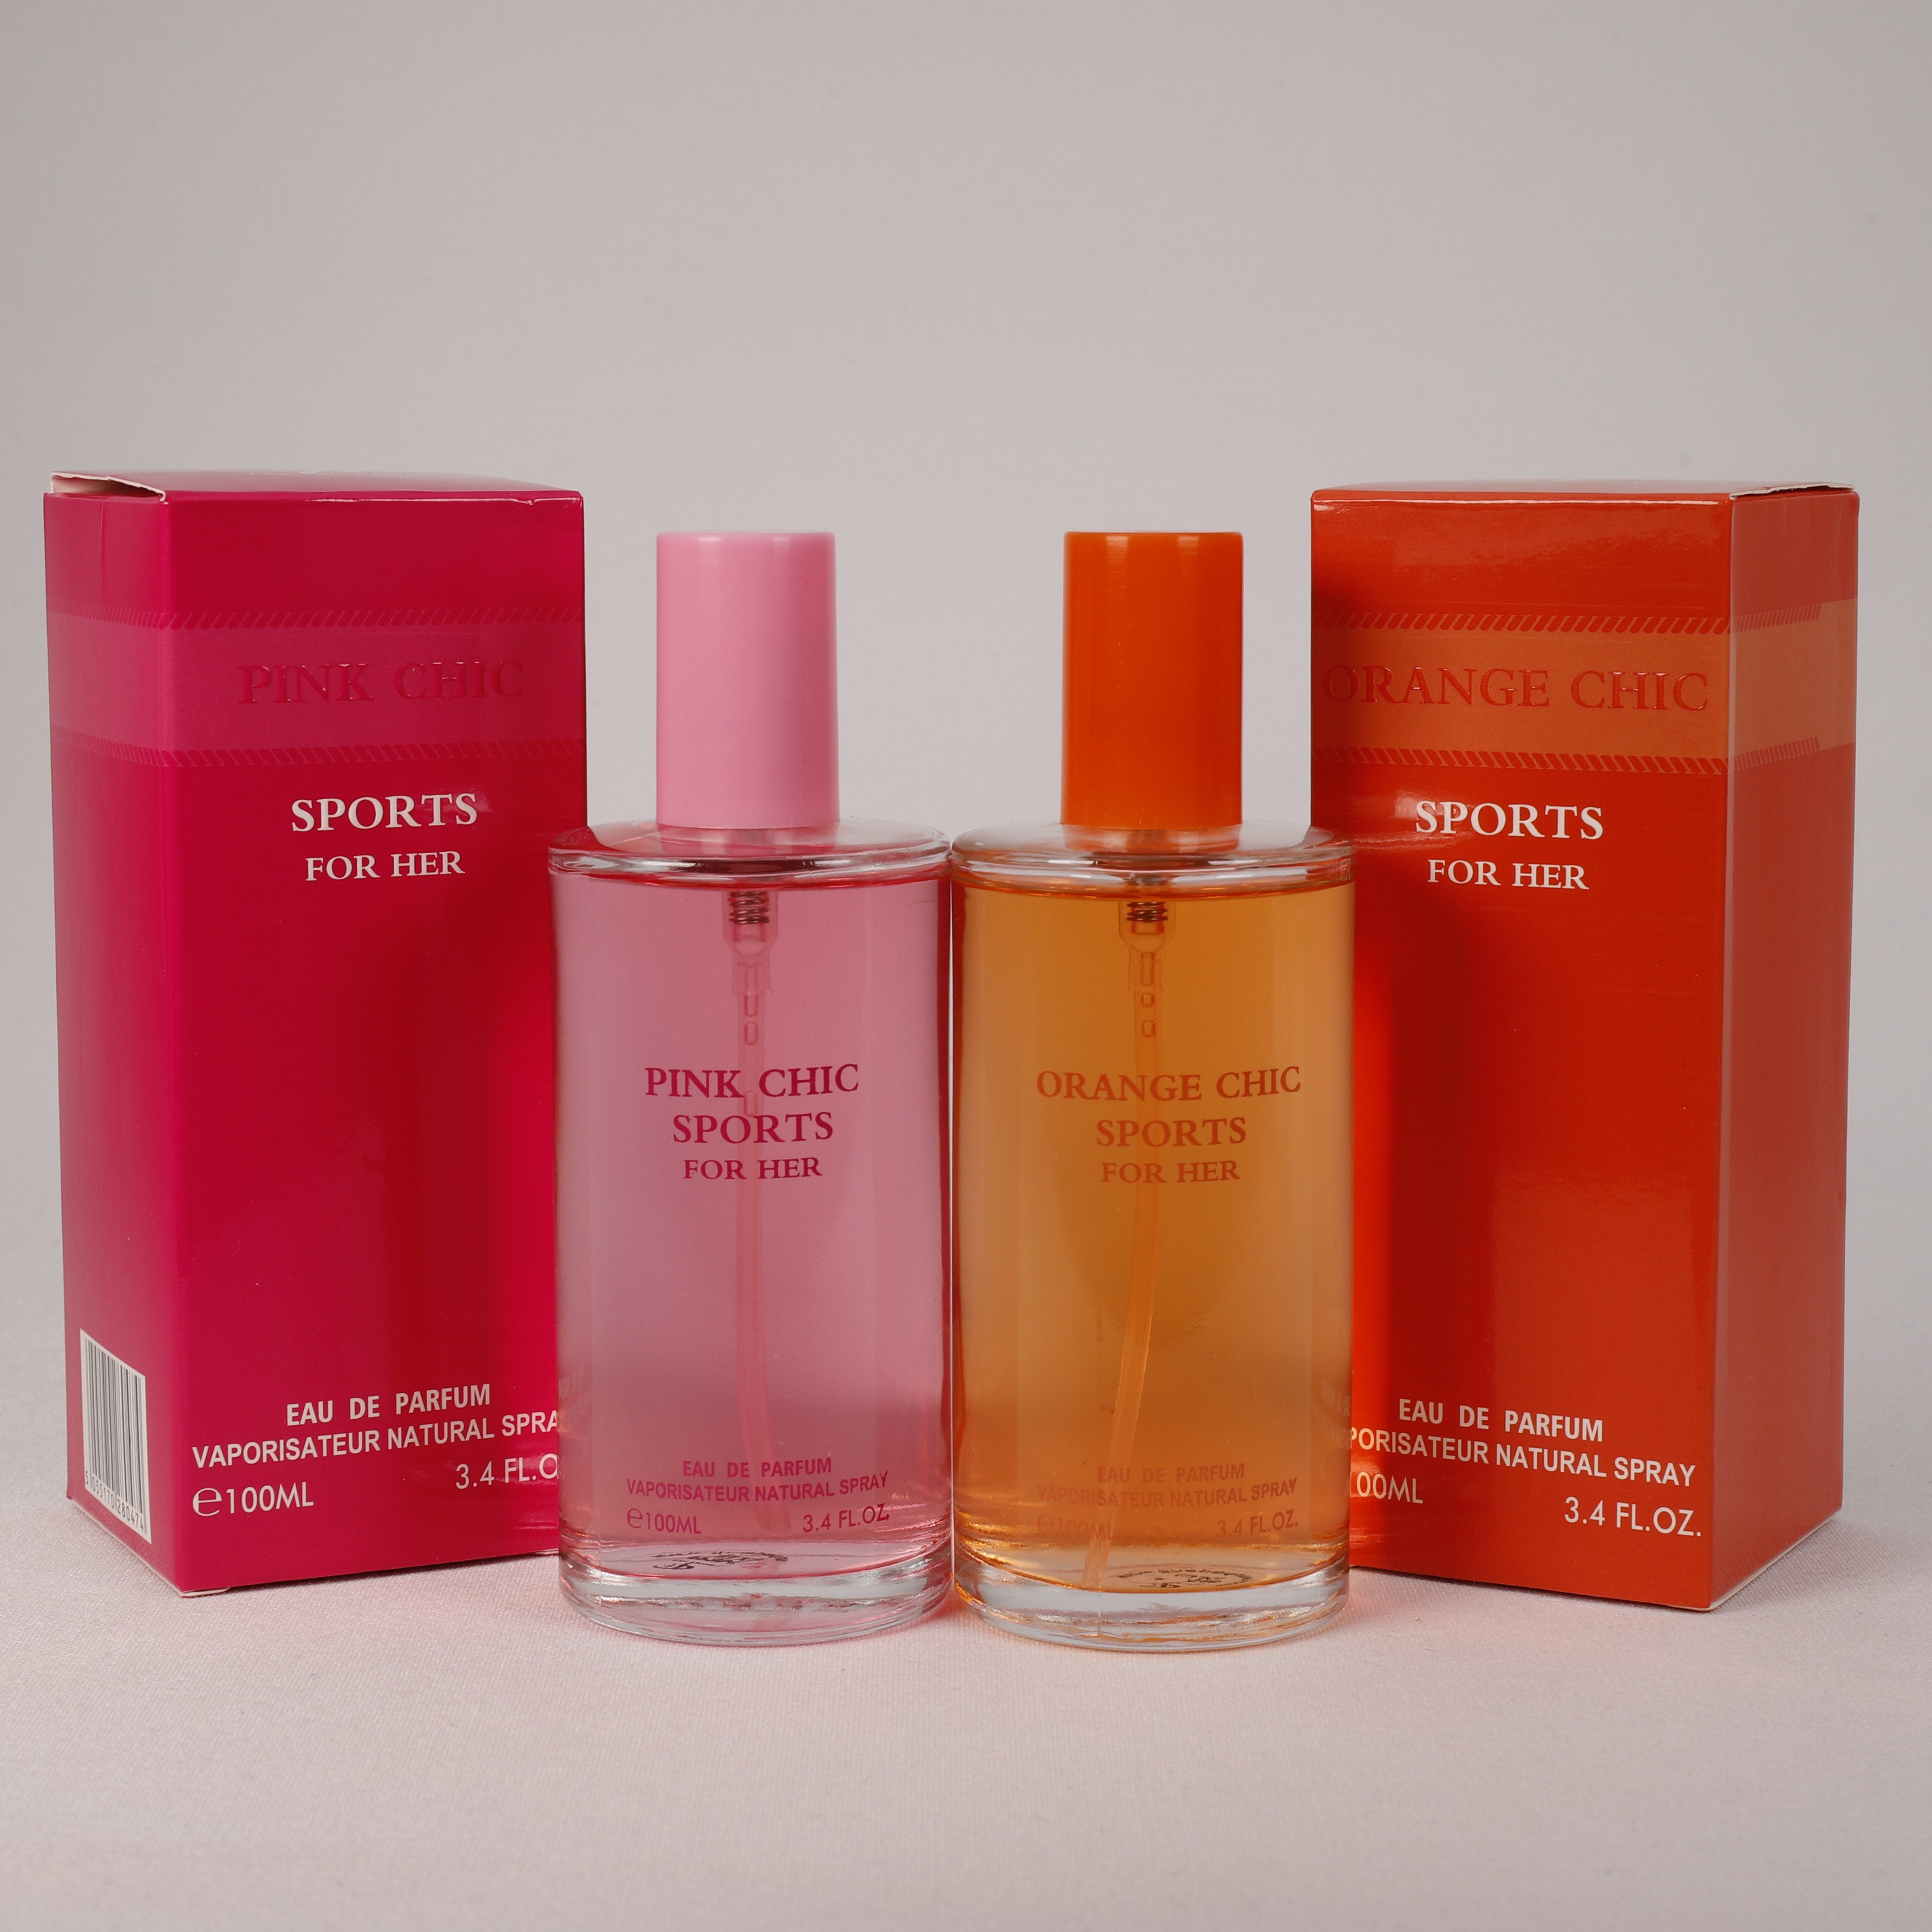 2 Stk. Orange & Pink Chic Sports für Damen, 100 ml, Duft, TOP Parfüm, NEU OVP